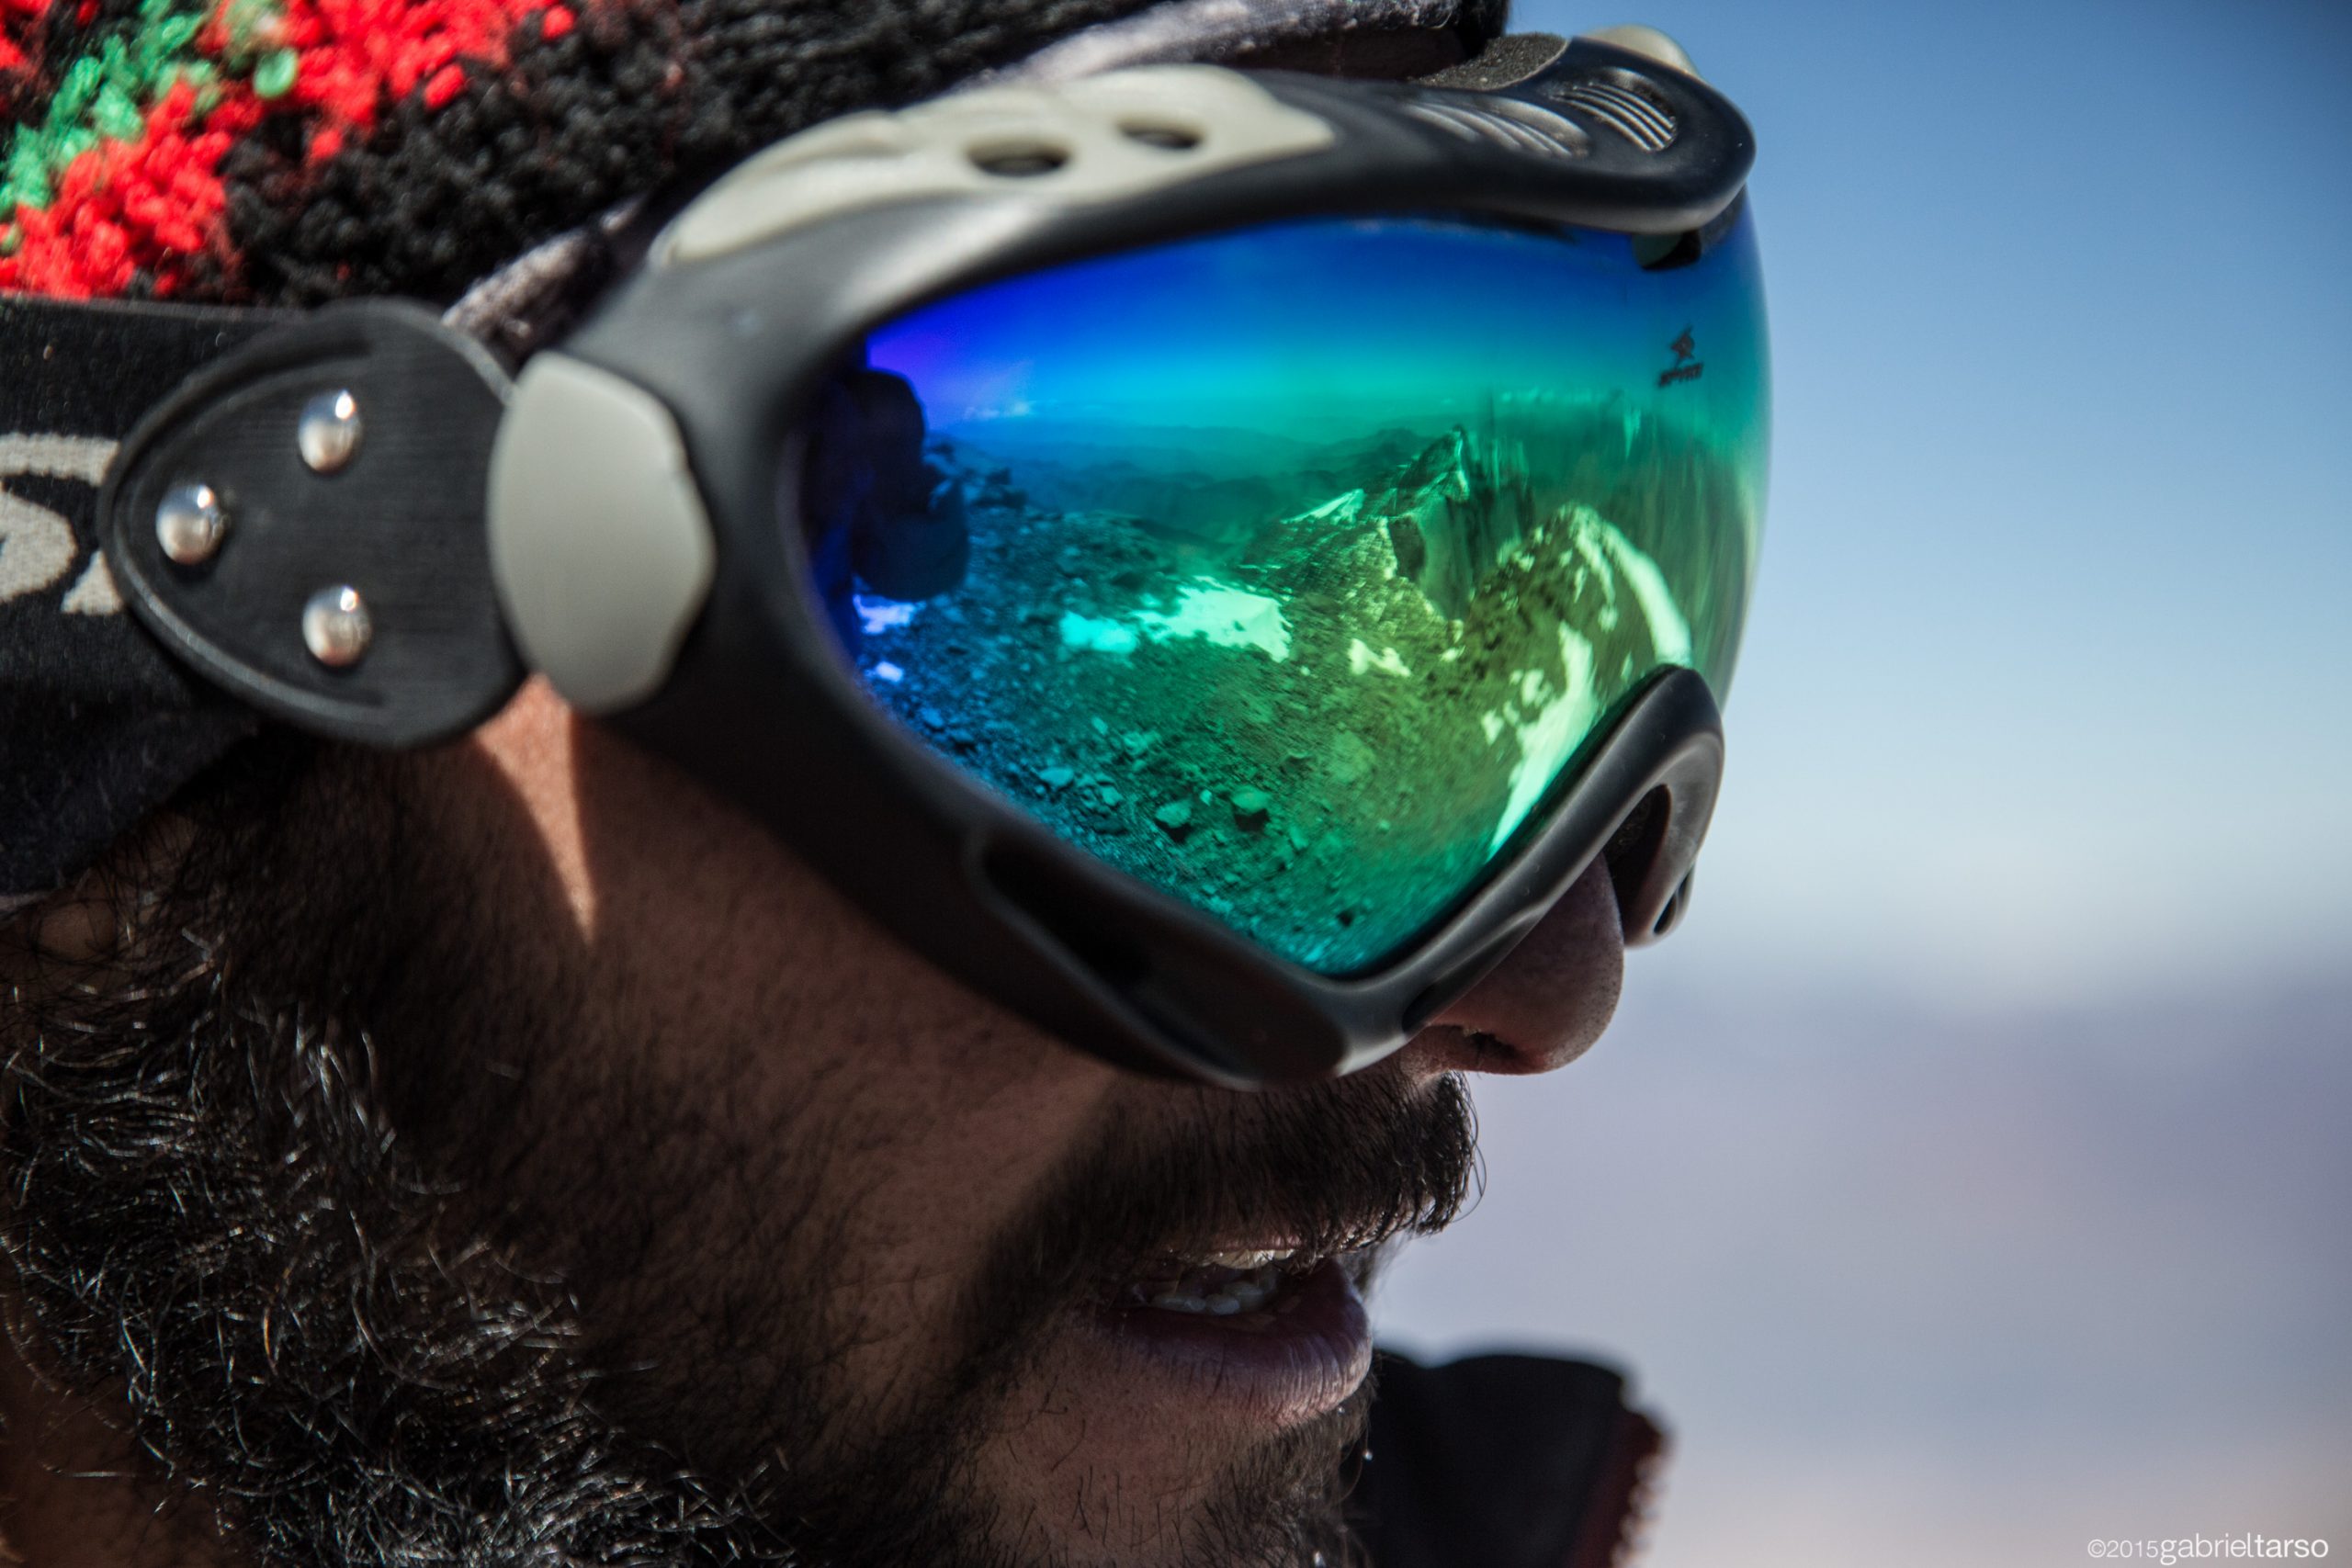 Para cégo ver: a fotografia foca o rosto de um montanhista homem usando uma viseira para proteger os olhos do reflexo da neve. 